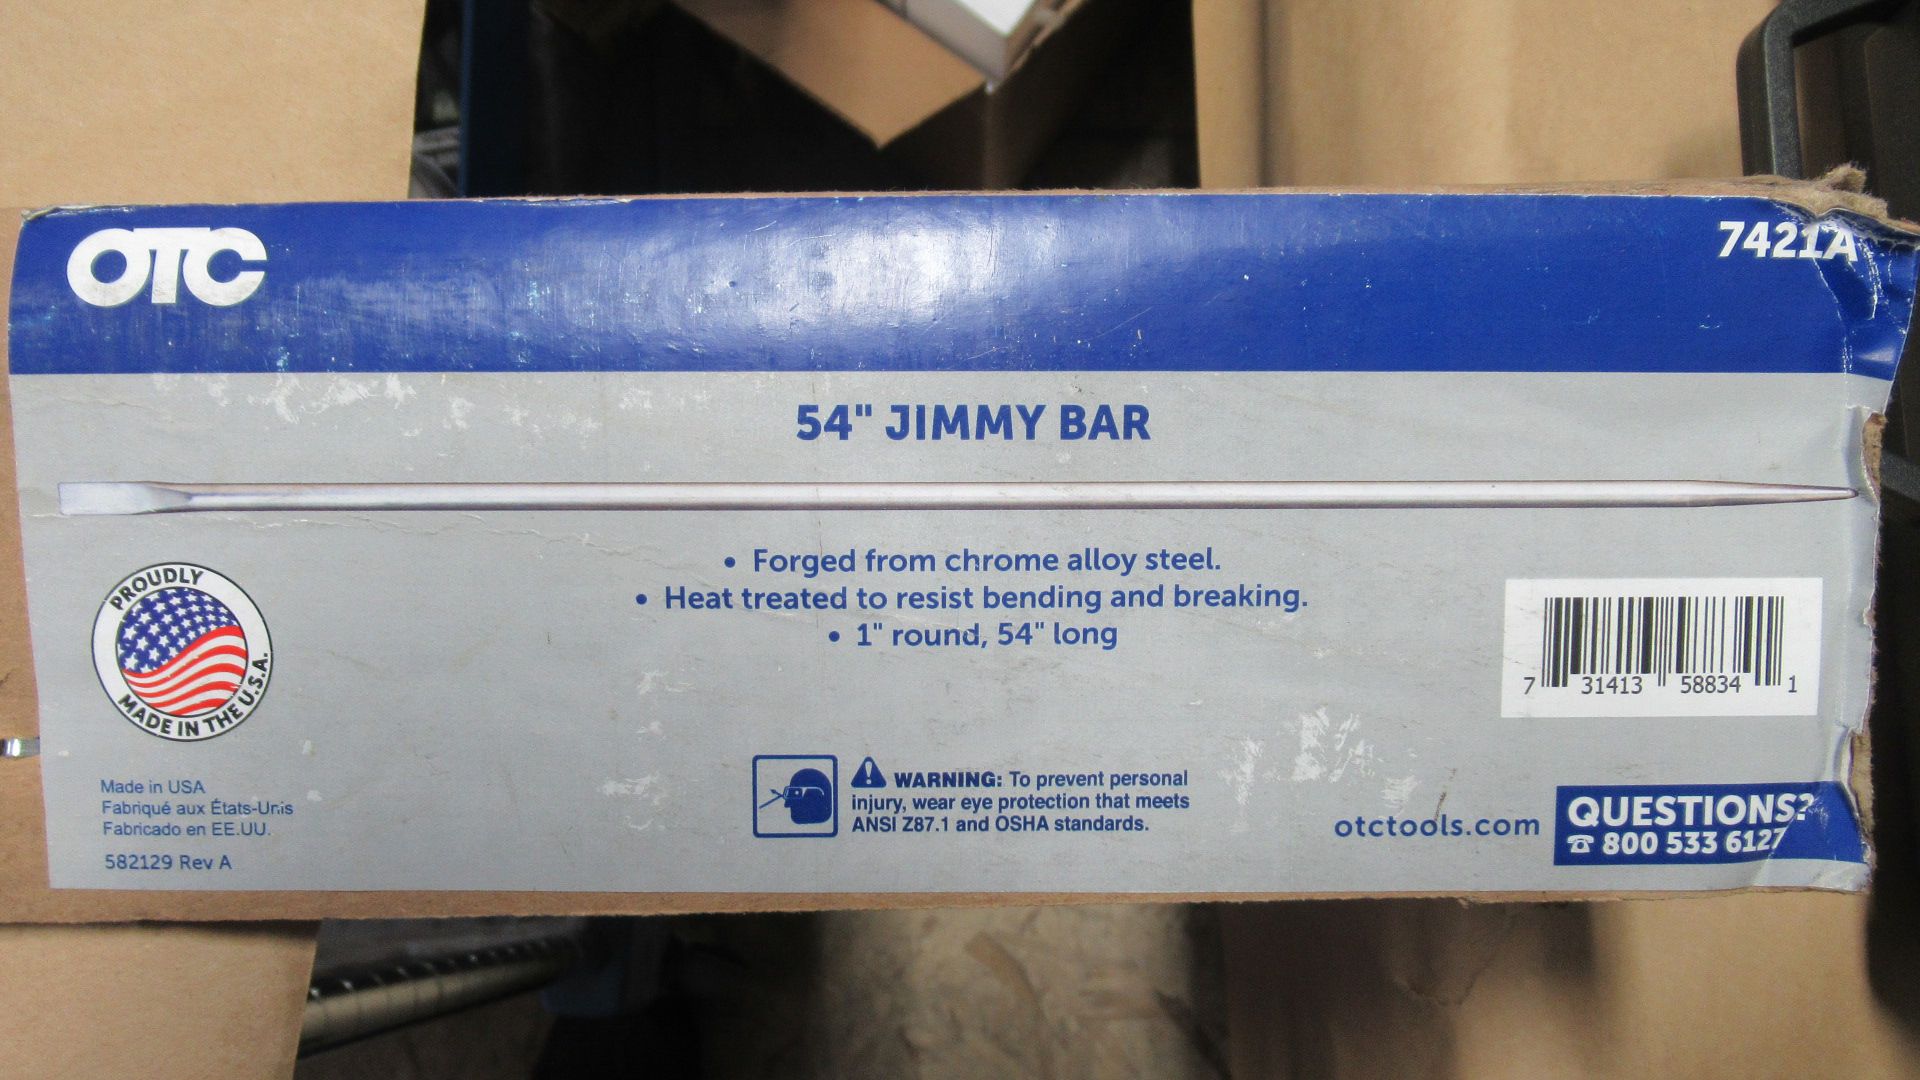 54" JIMMY BAR OTC-7421A